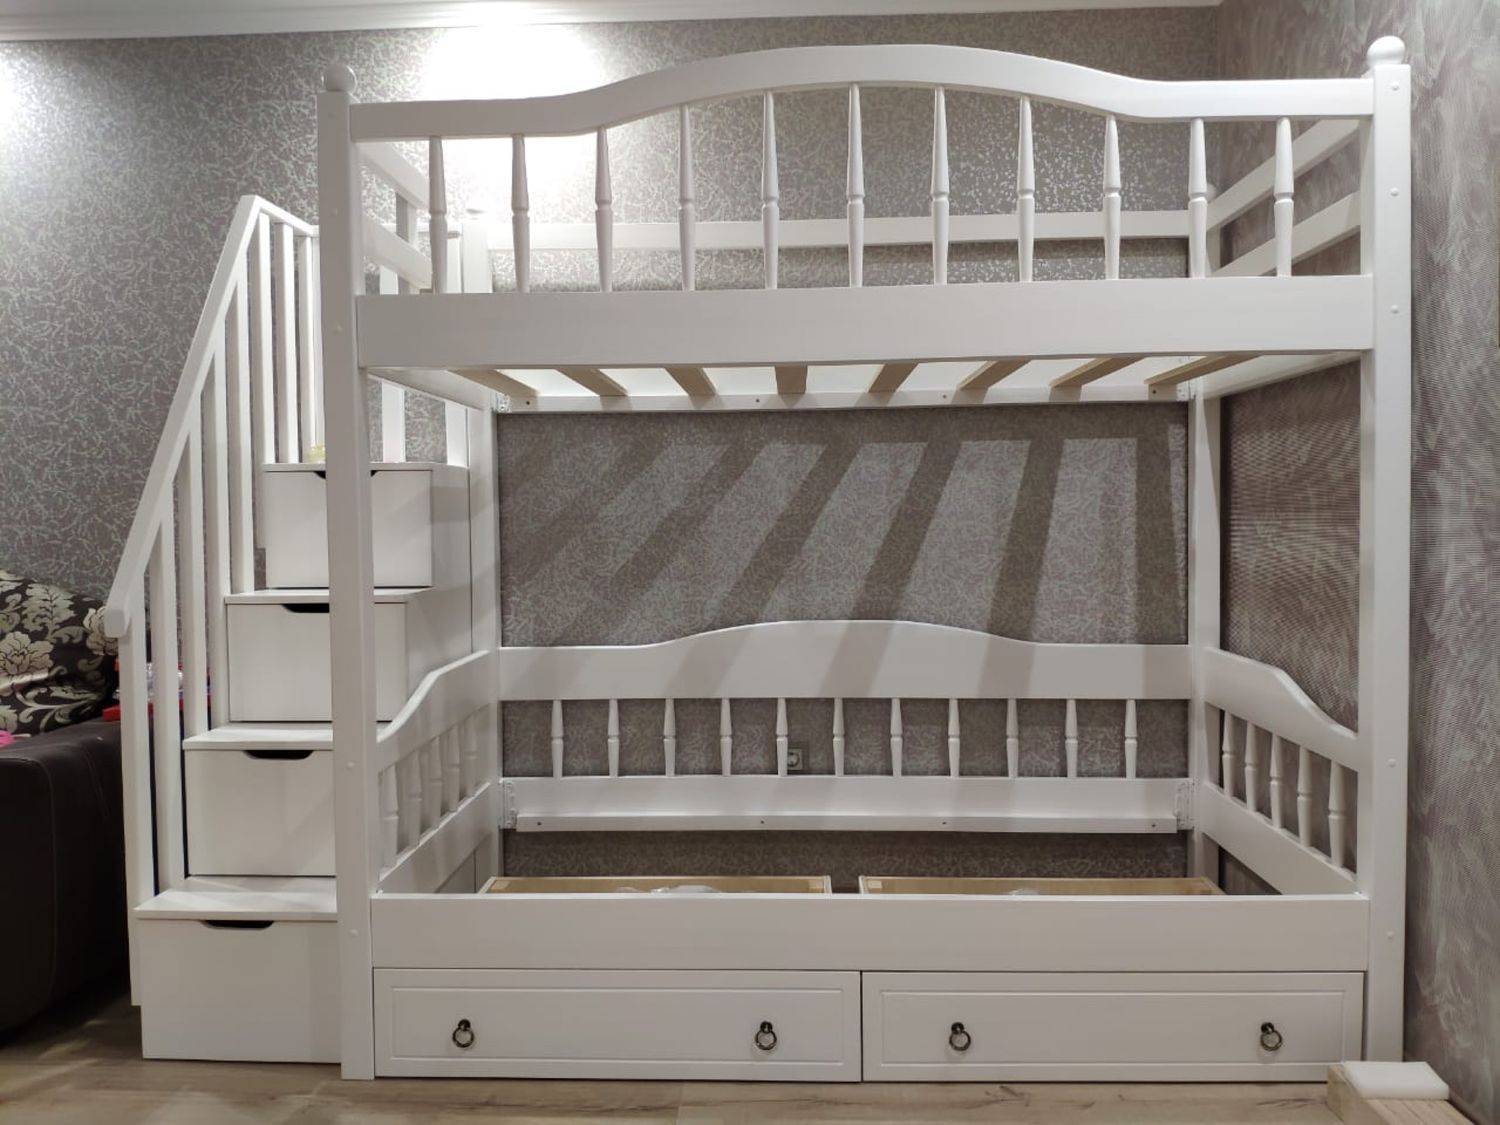 Детские двухъярусные кровати в интерьере. фото, примеры и советы